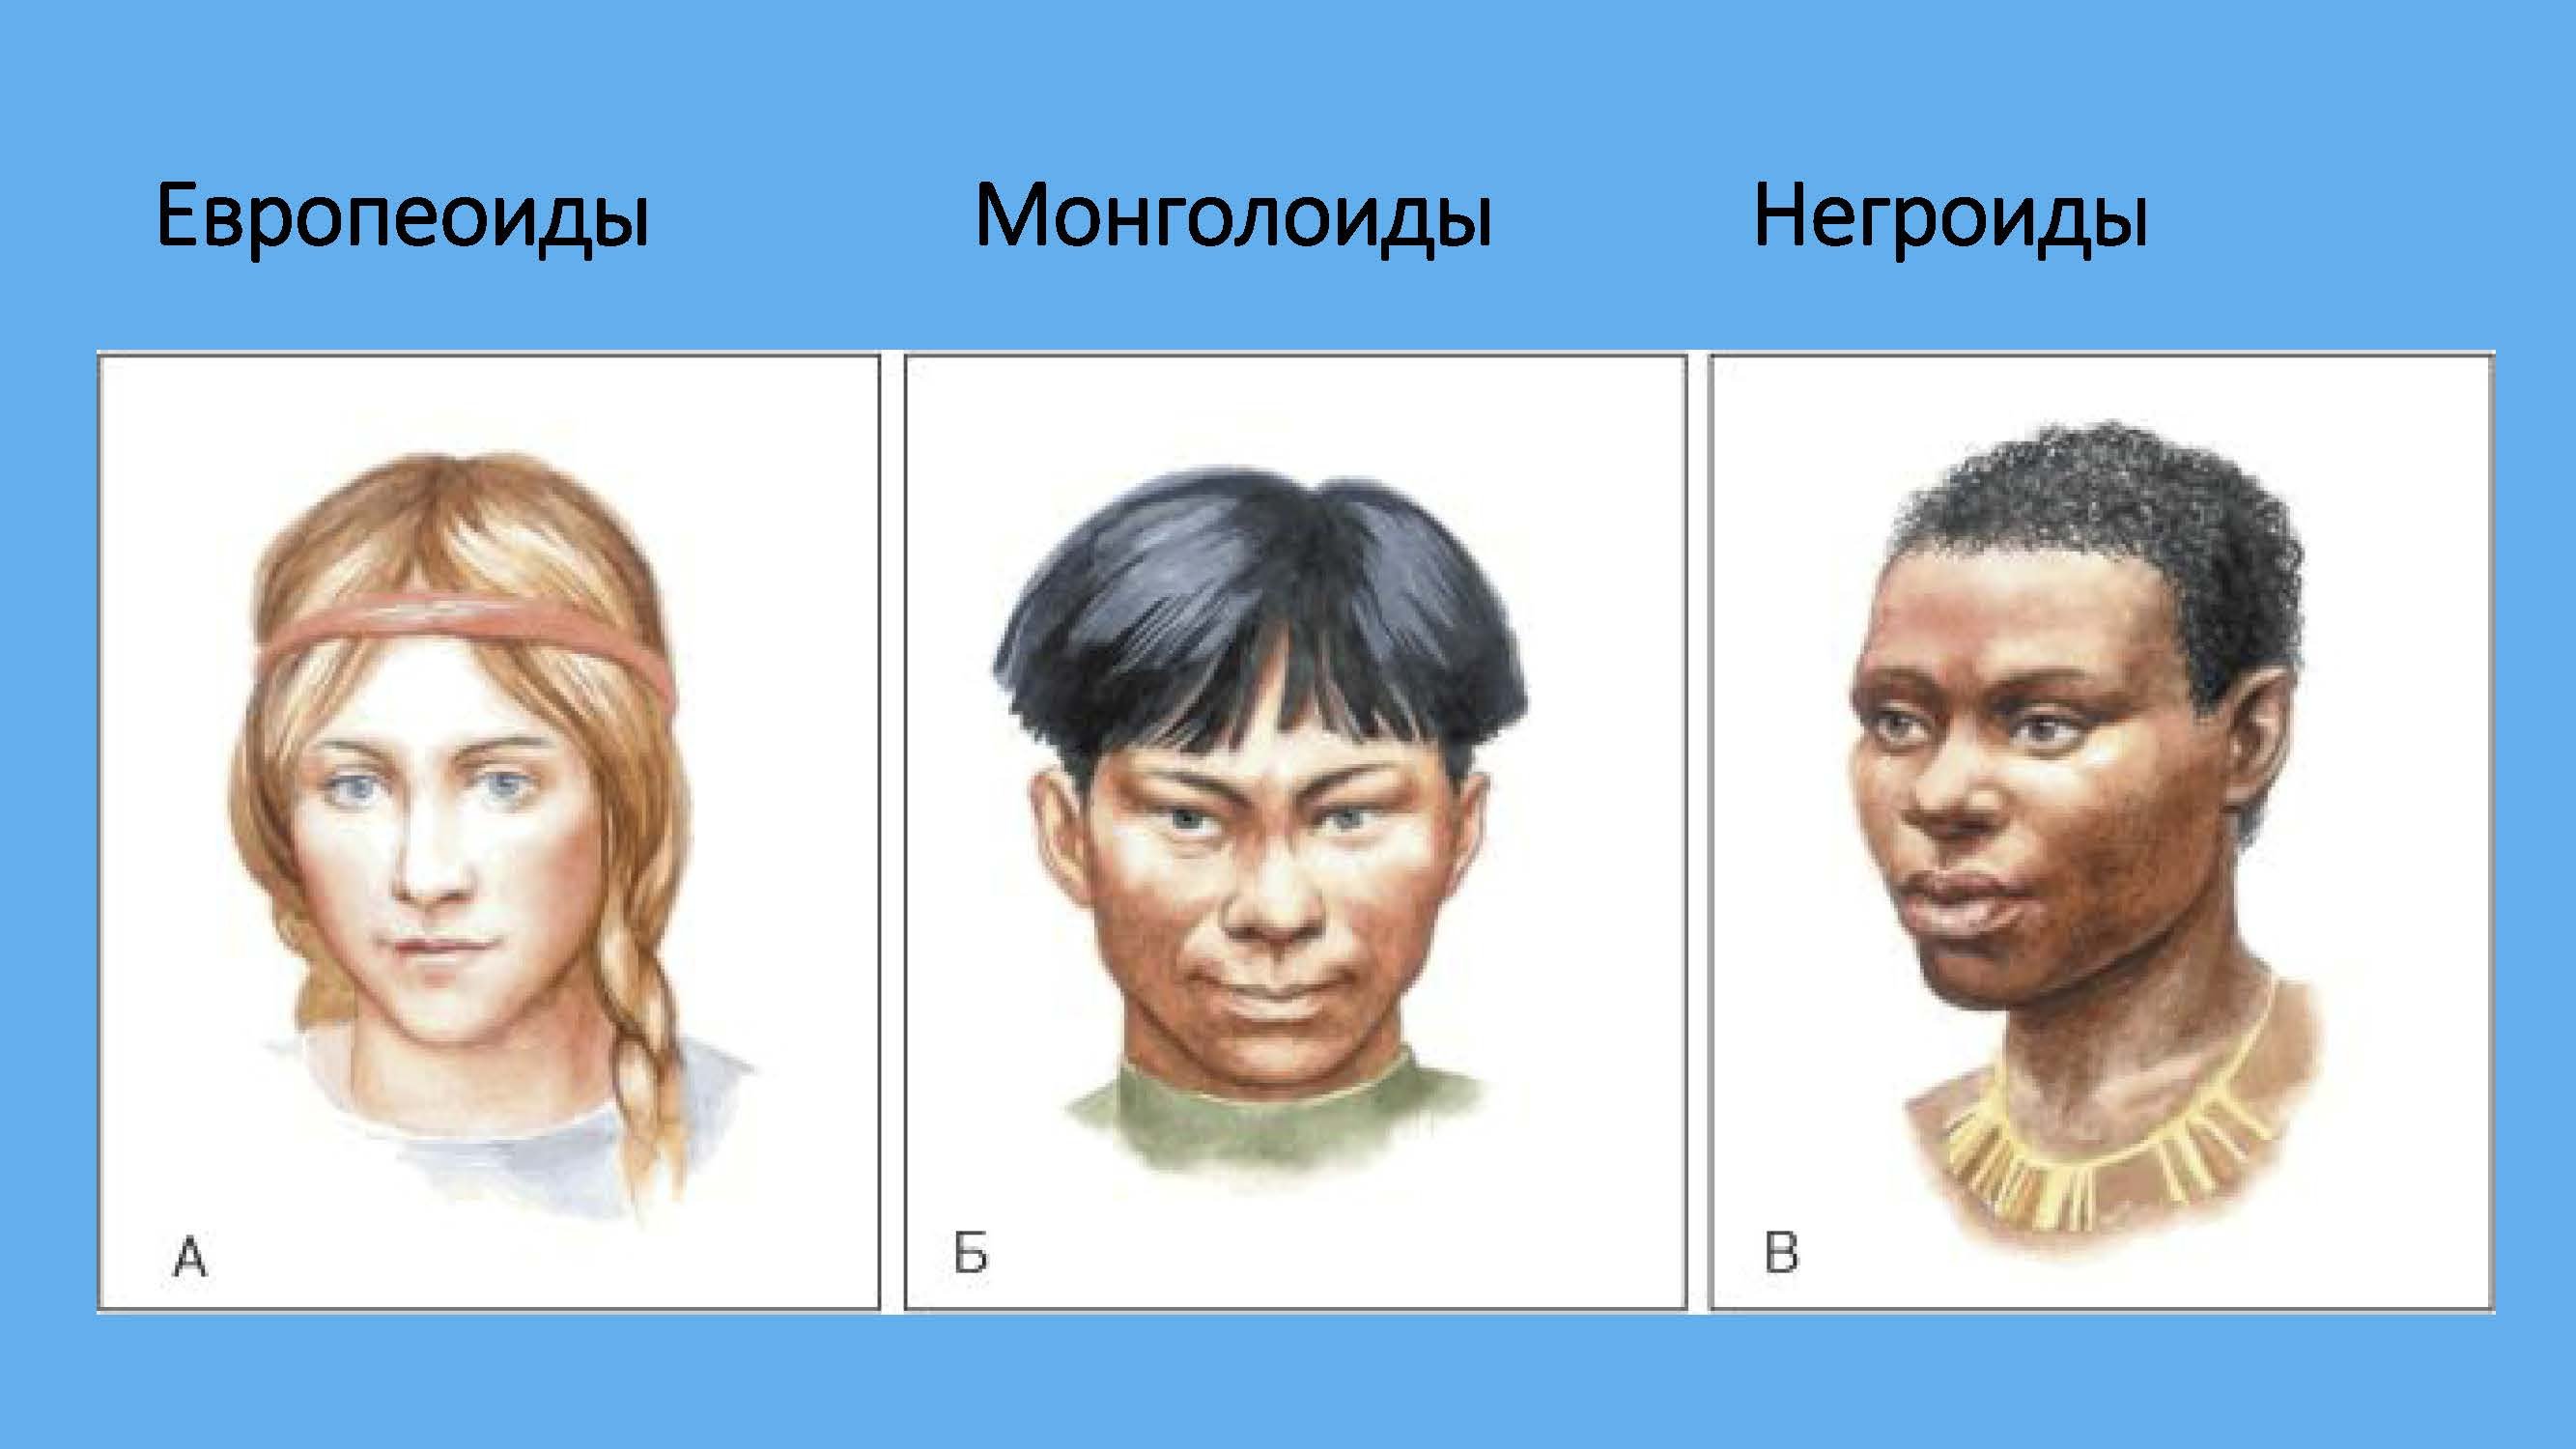 Человеческая раса европеоидная. Расы Европеоид монголоид. Европеоидная монголоидная негроидная раса. Монголоидная раса и негроидная раса. Европеоид монголоид негроид.